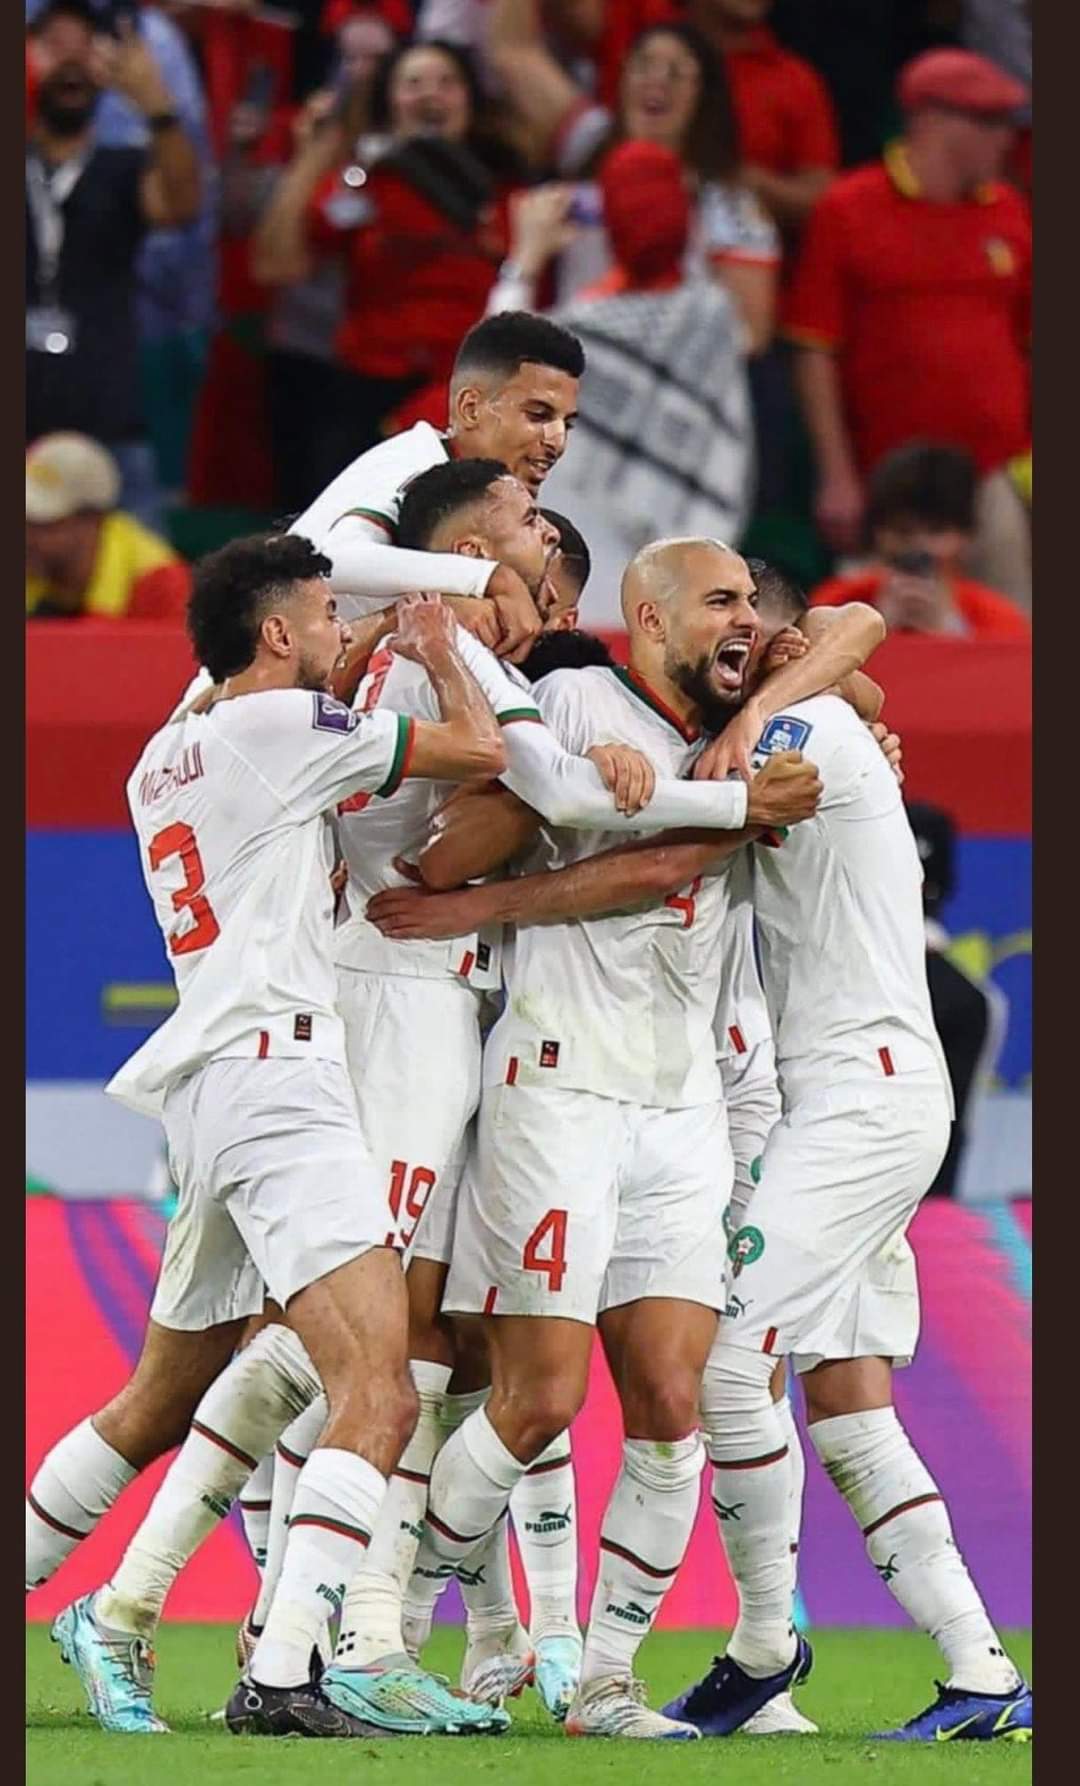 كأس العالم: رسمياً تأهل منتخبي المغرب و كرواتيا لدور ال16 في الجوله الثالثة من مونديال قطر2022